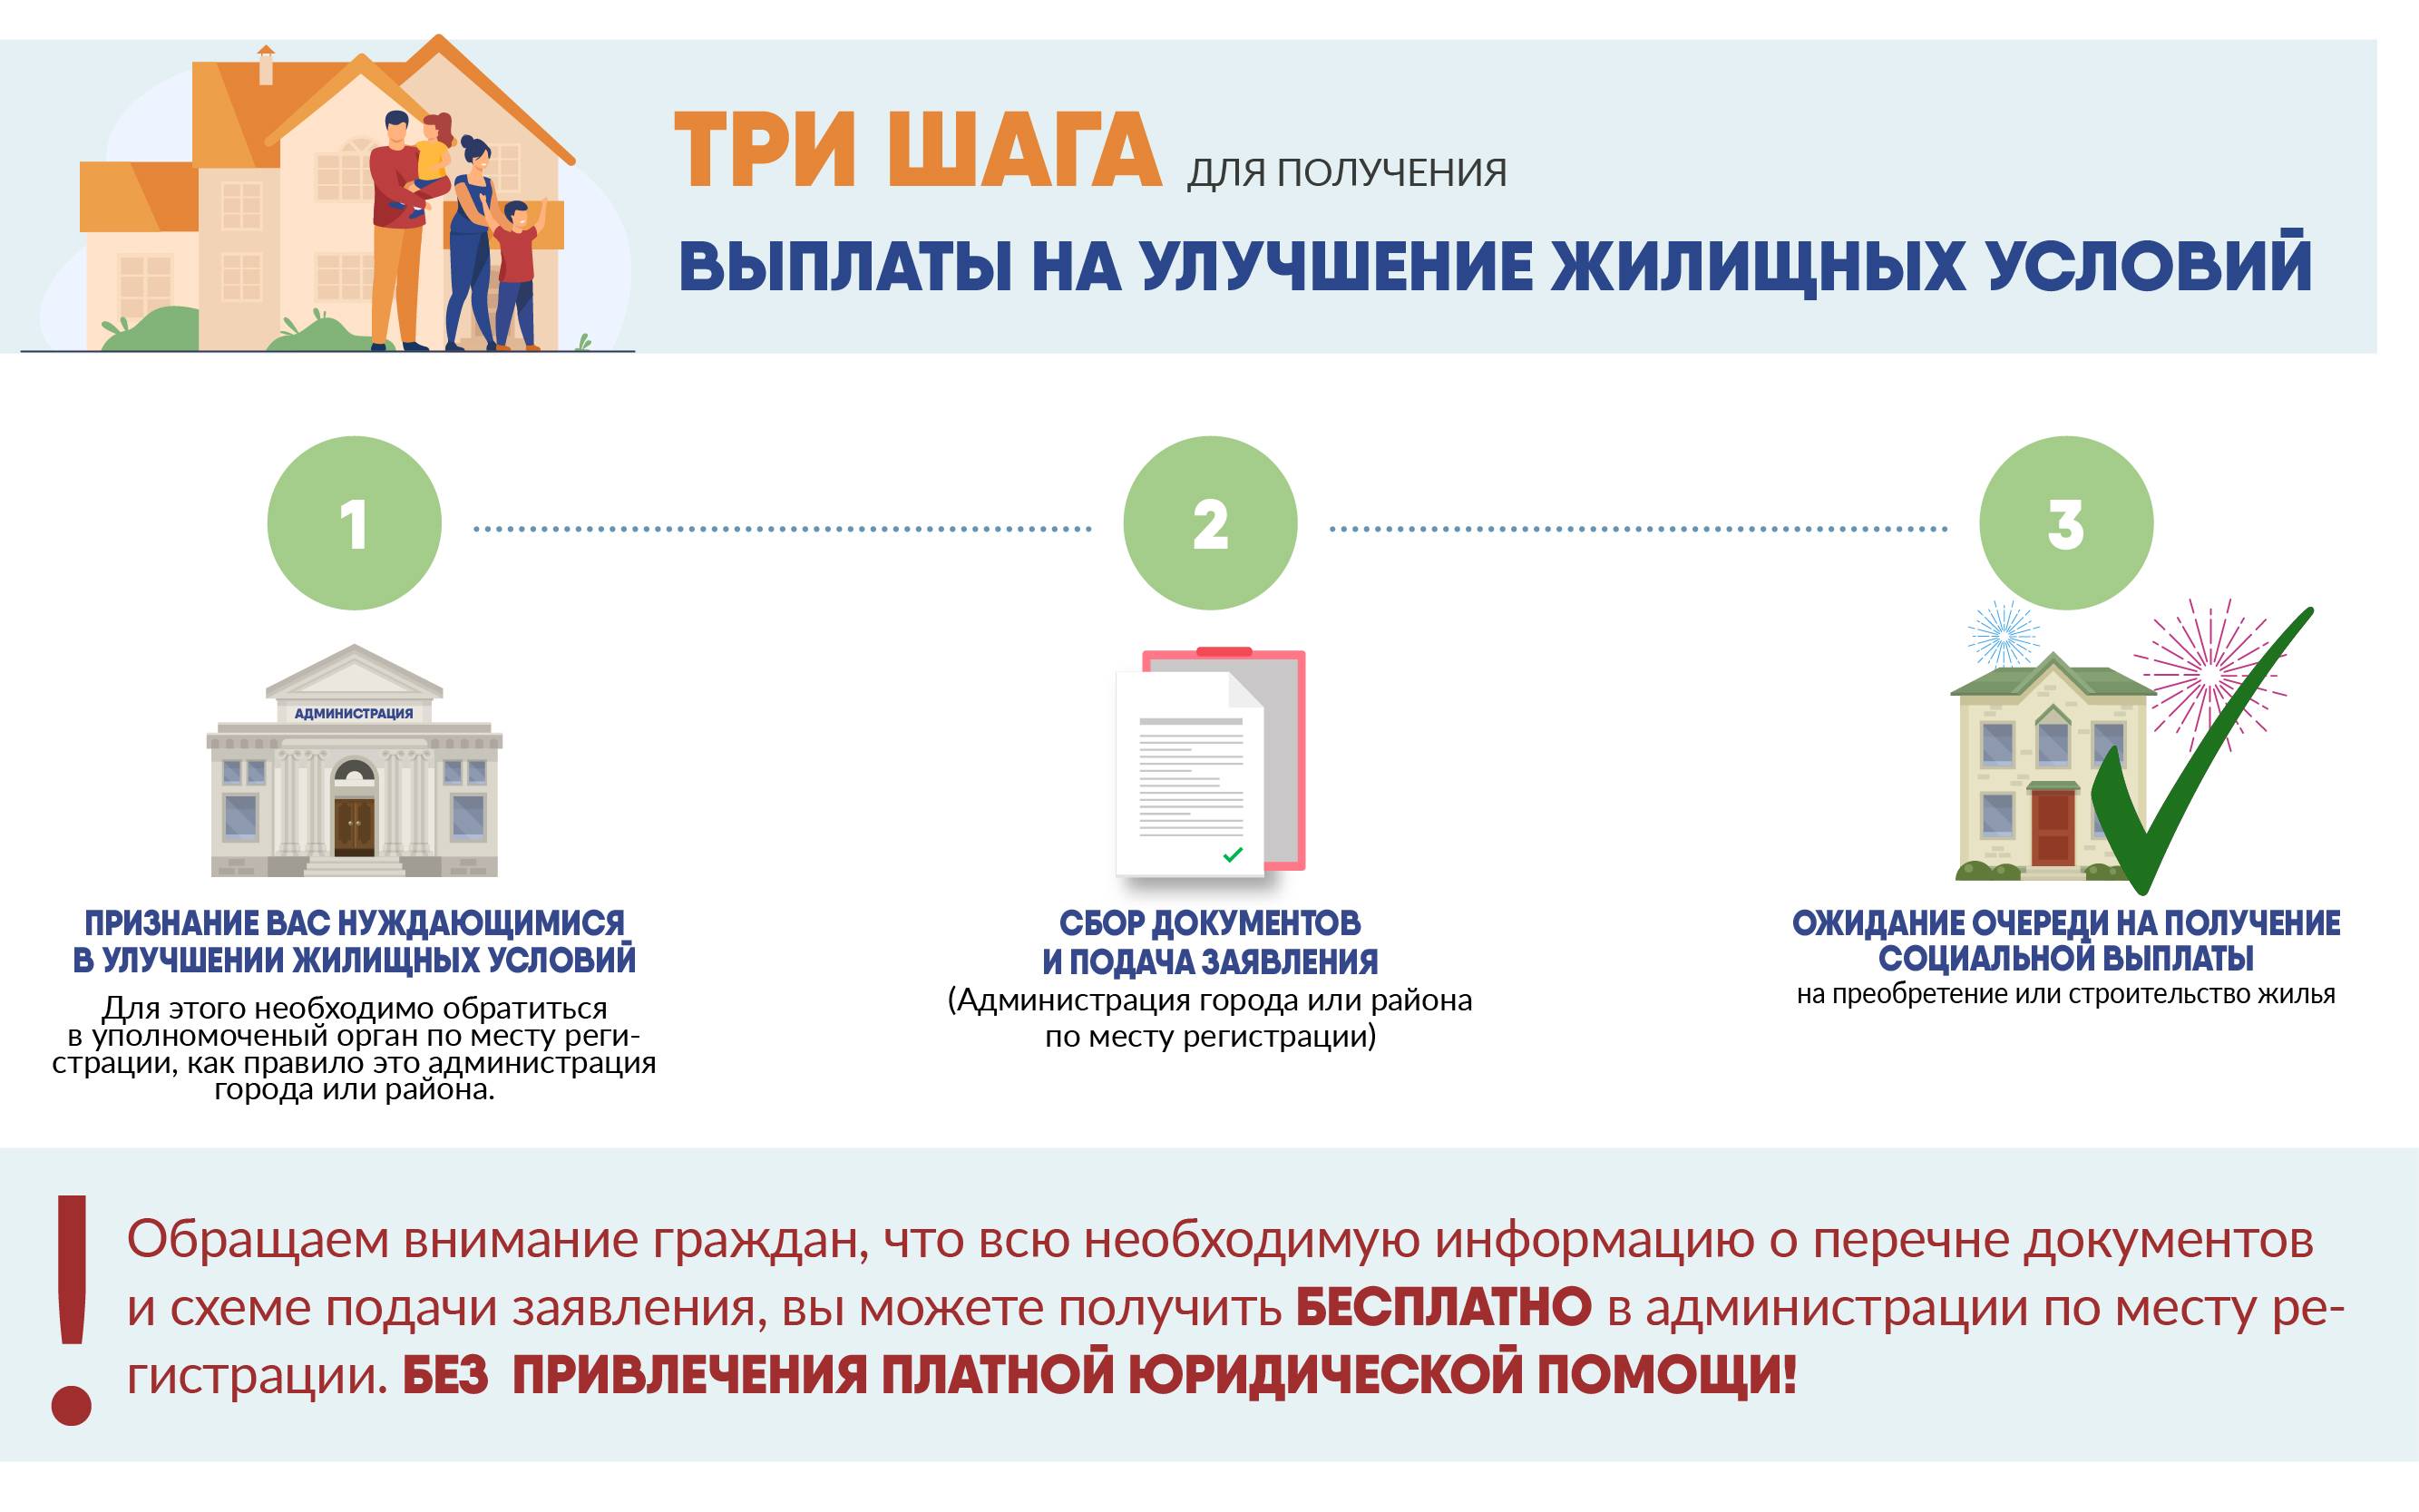 Программа - "жилье для российской семьи" в 2022 году